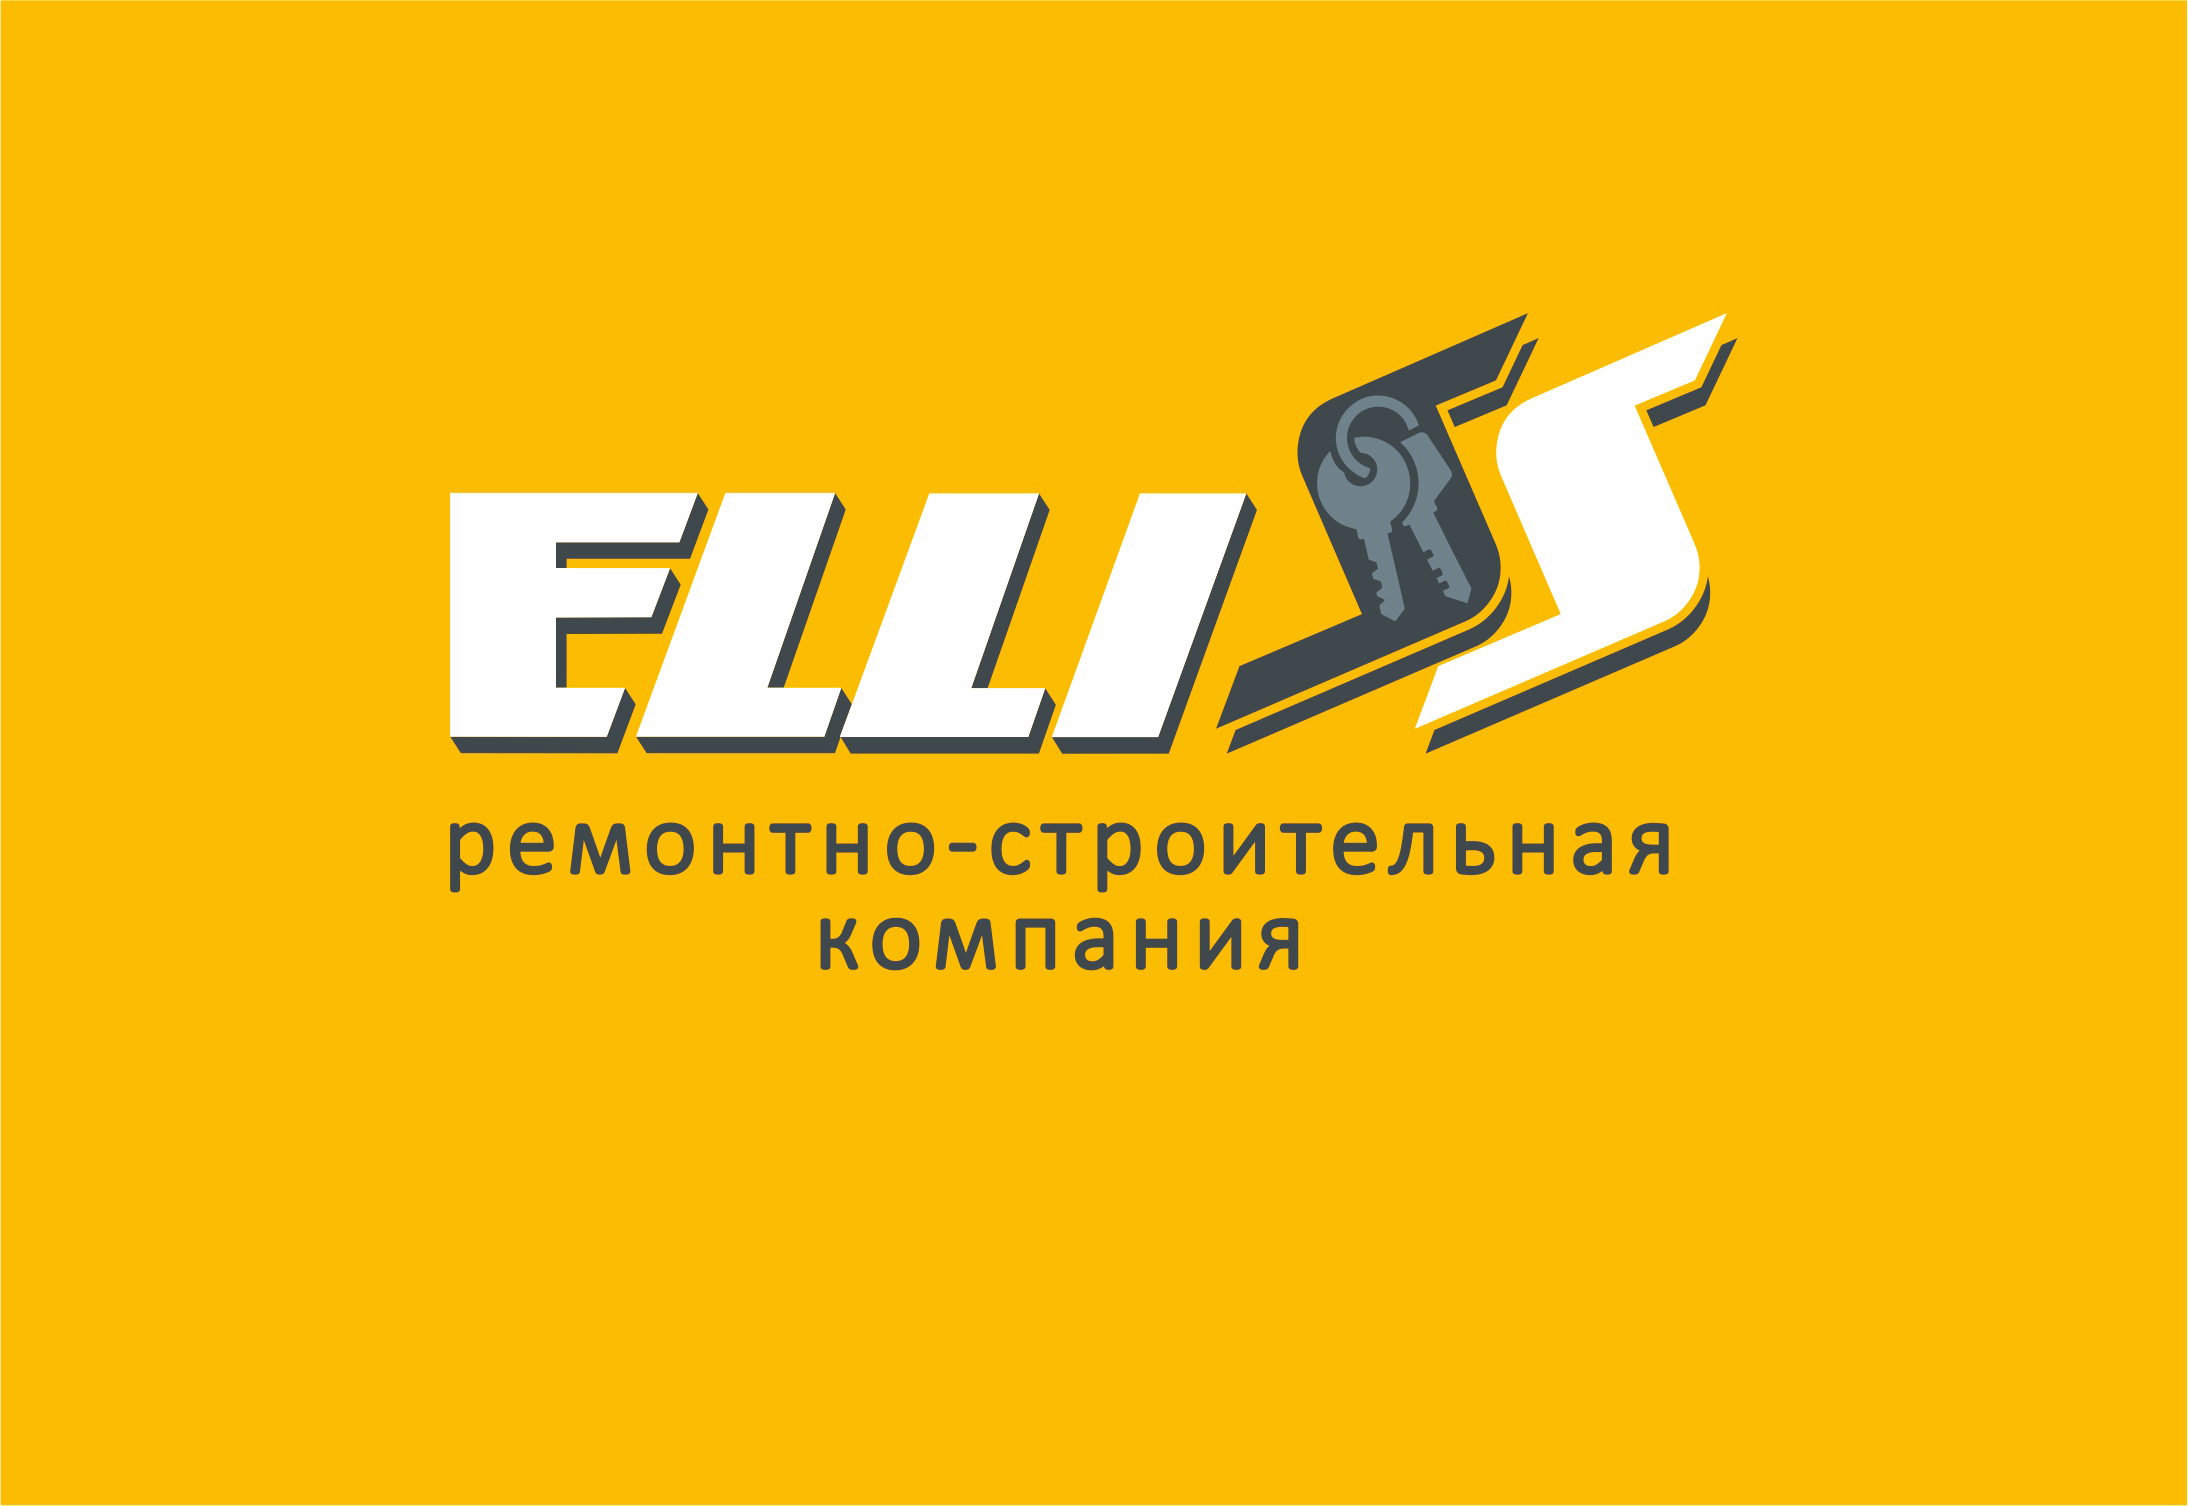 Разработка логотипа для ремонтно-строительной компании ELLISS